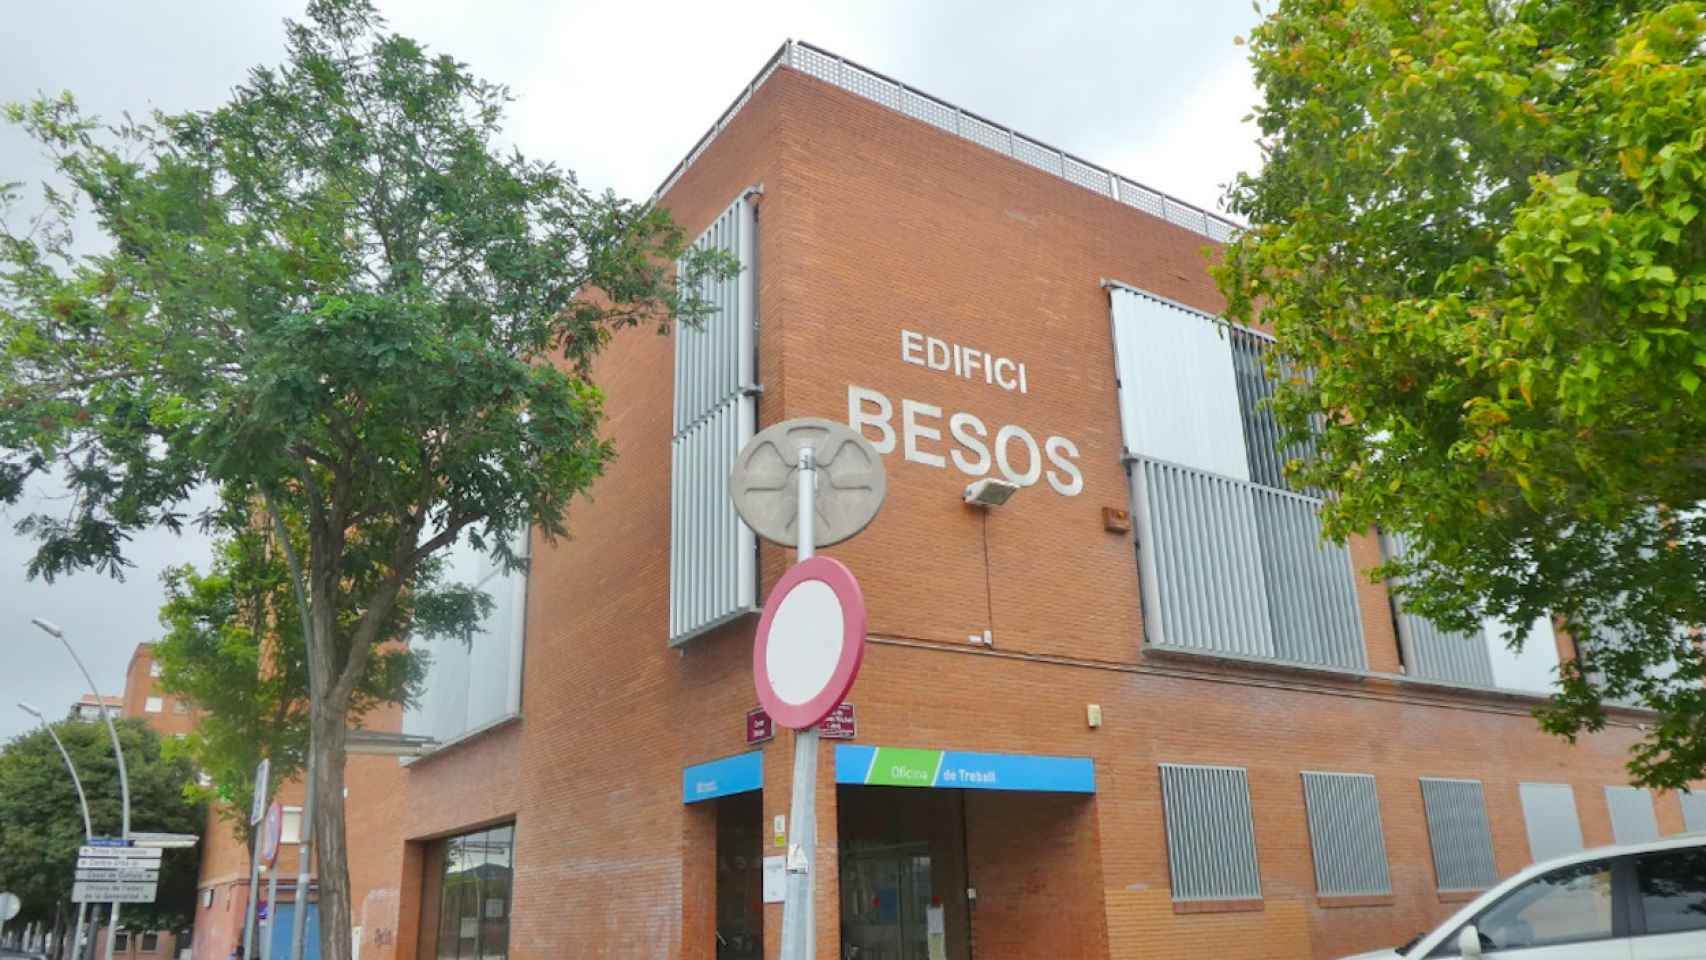 Edificio donde se encuentra la comisaría de los Mossos d'Esquadra de Sant Adrià de Besòs, municipio en el que tuvo lugar el ataque homófobo / GOOGLE MAPS